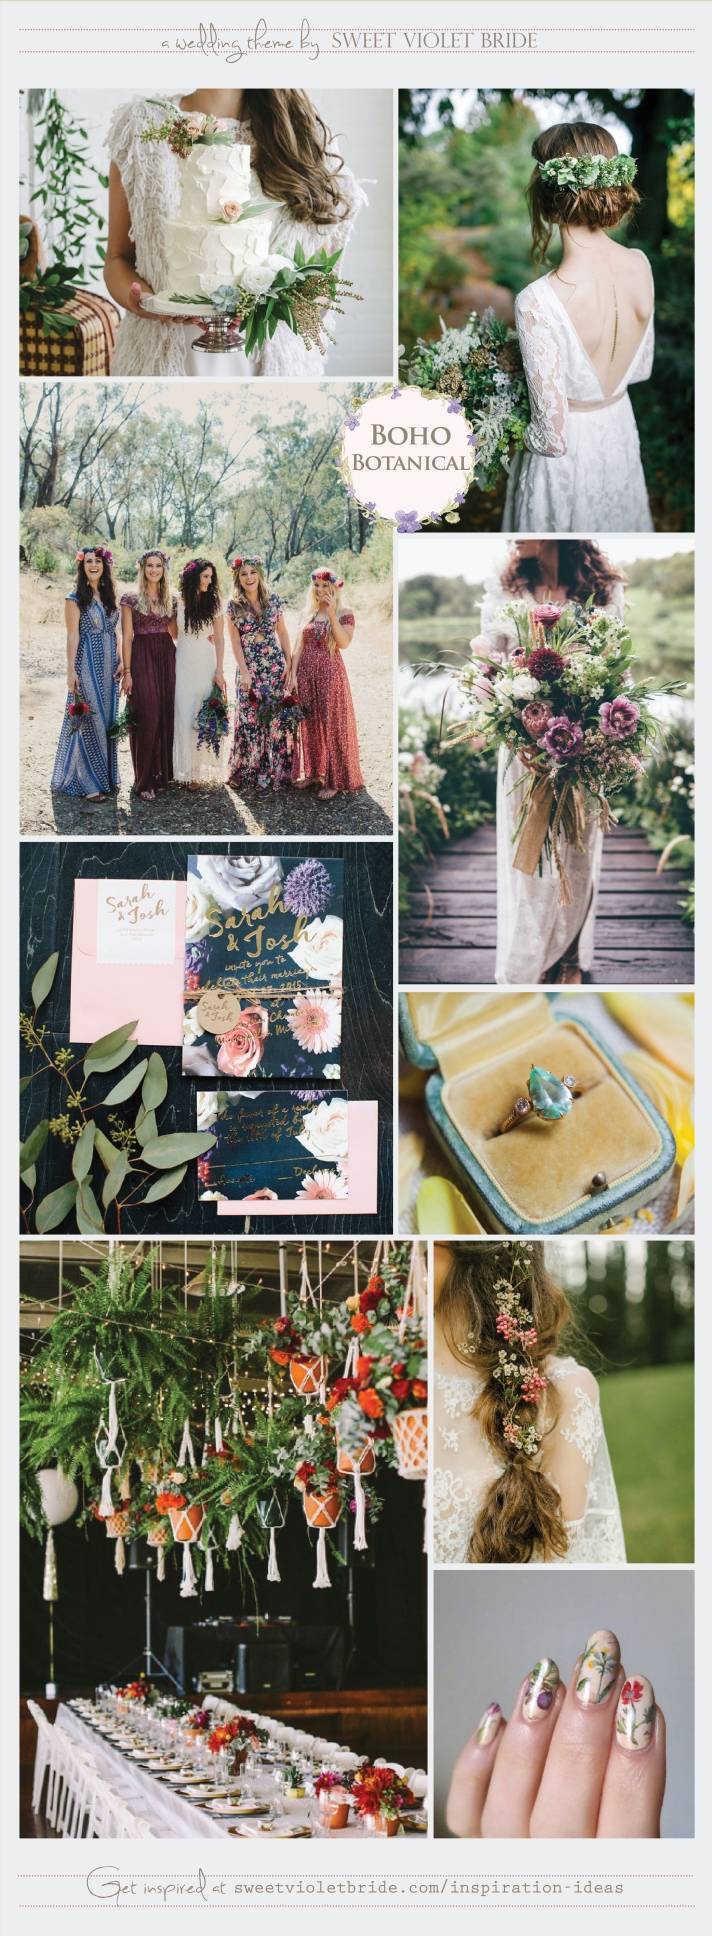 Wedding Inspiration Board #33: Boho Botanical 5